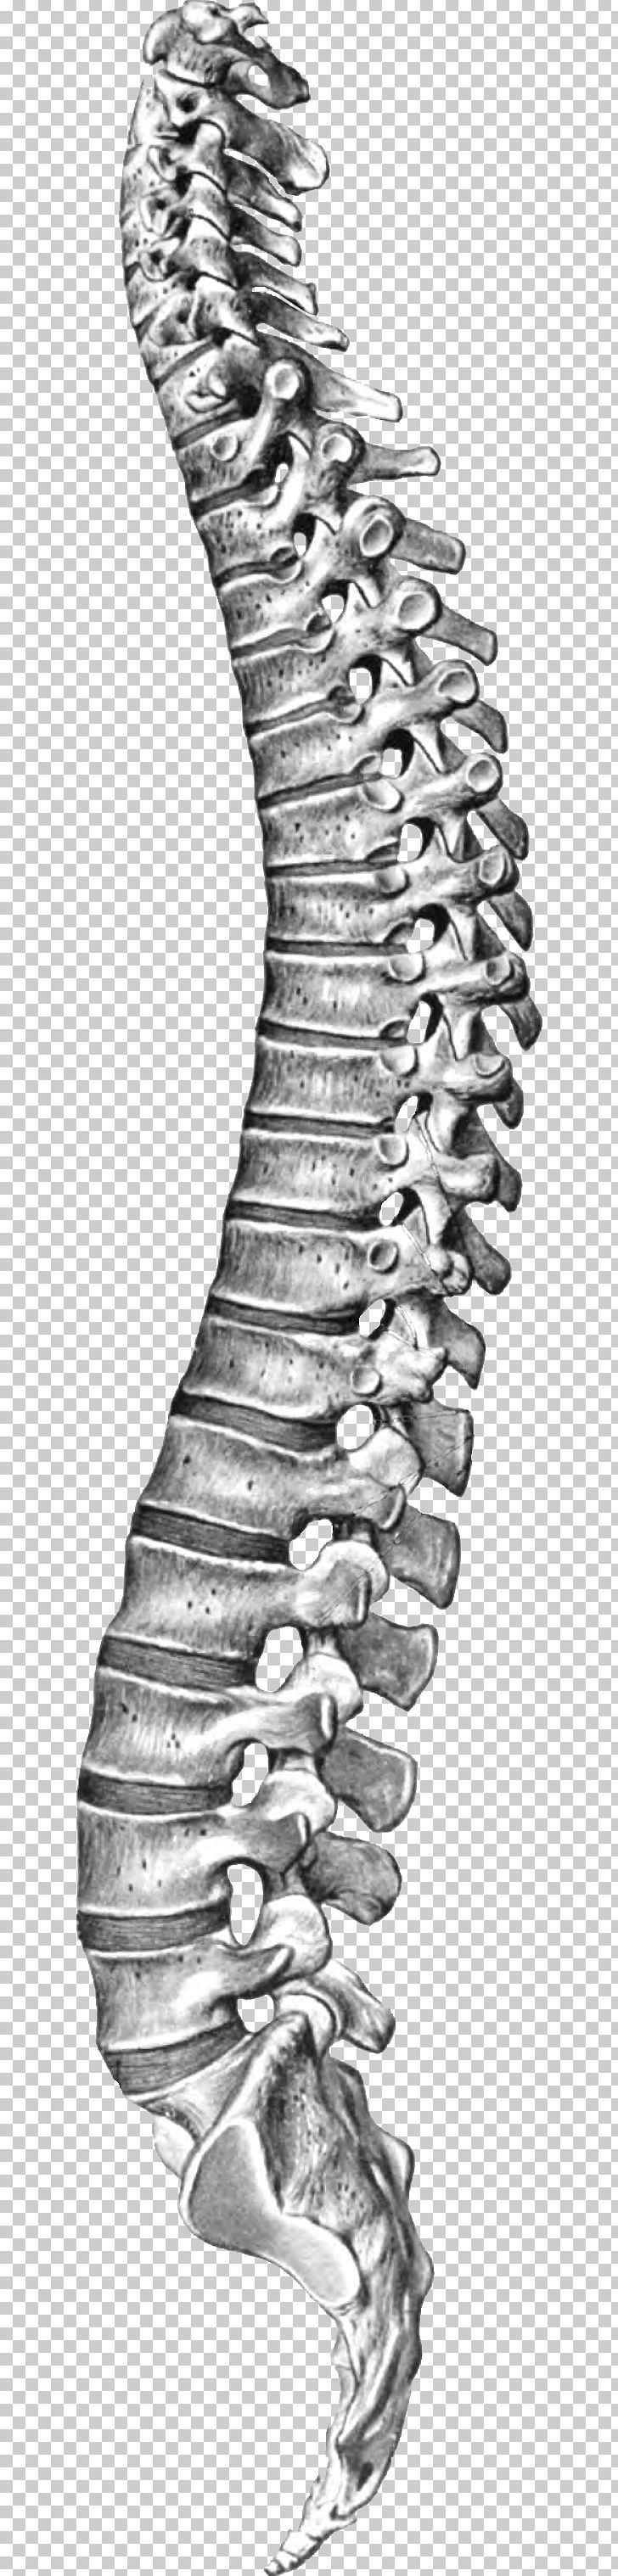 Spine Anatomy Image Details  NCI Visuals Online